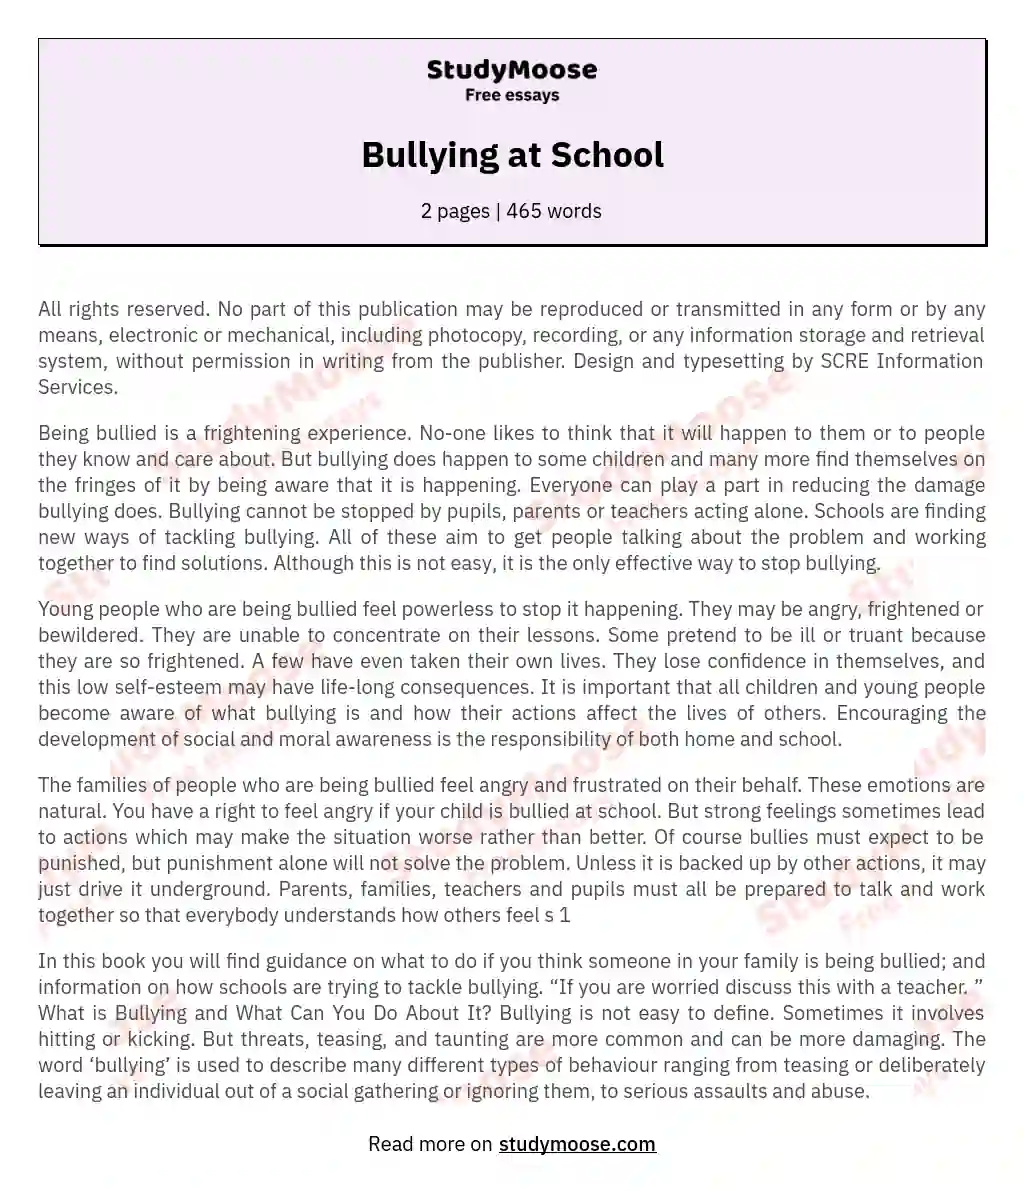 Bullying at School essay